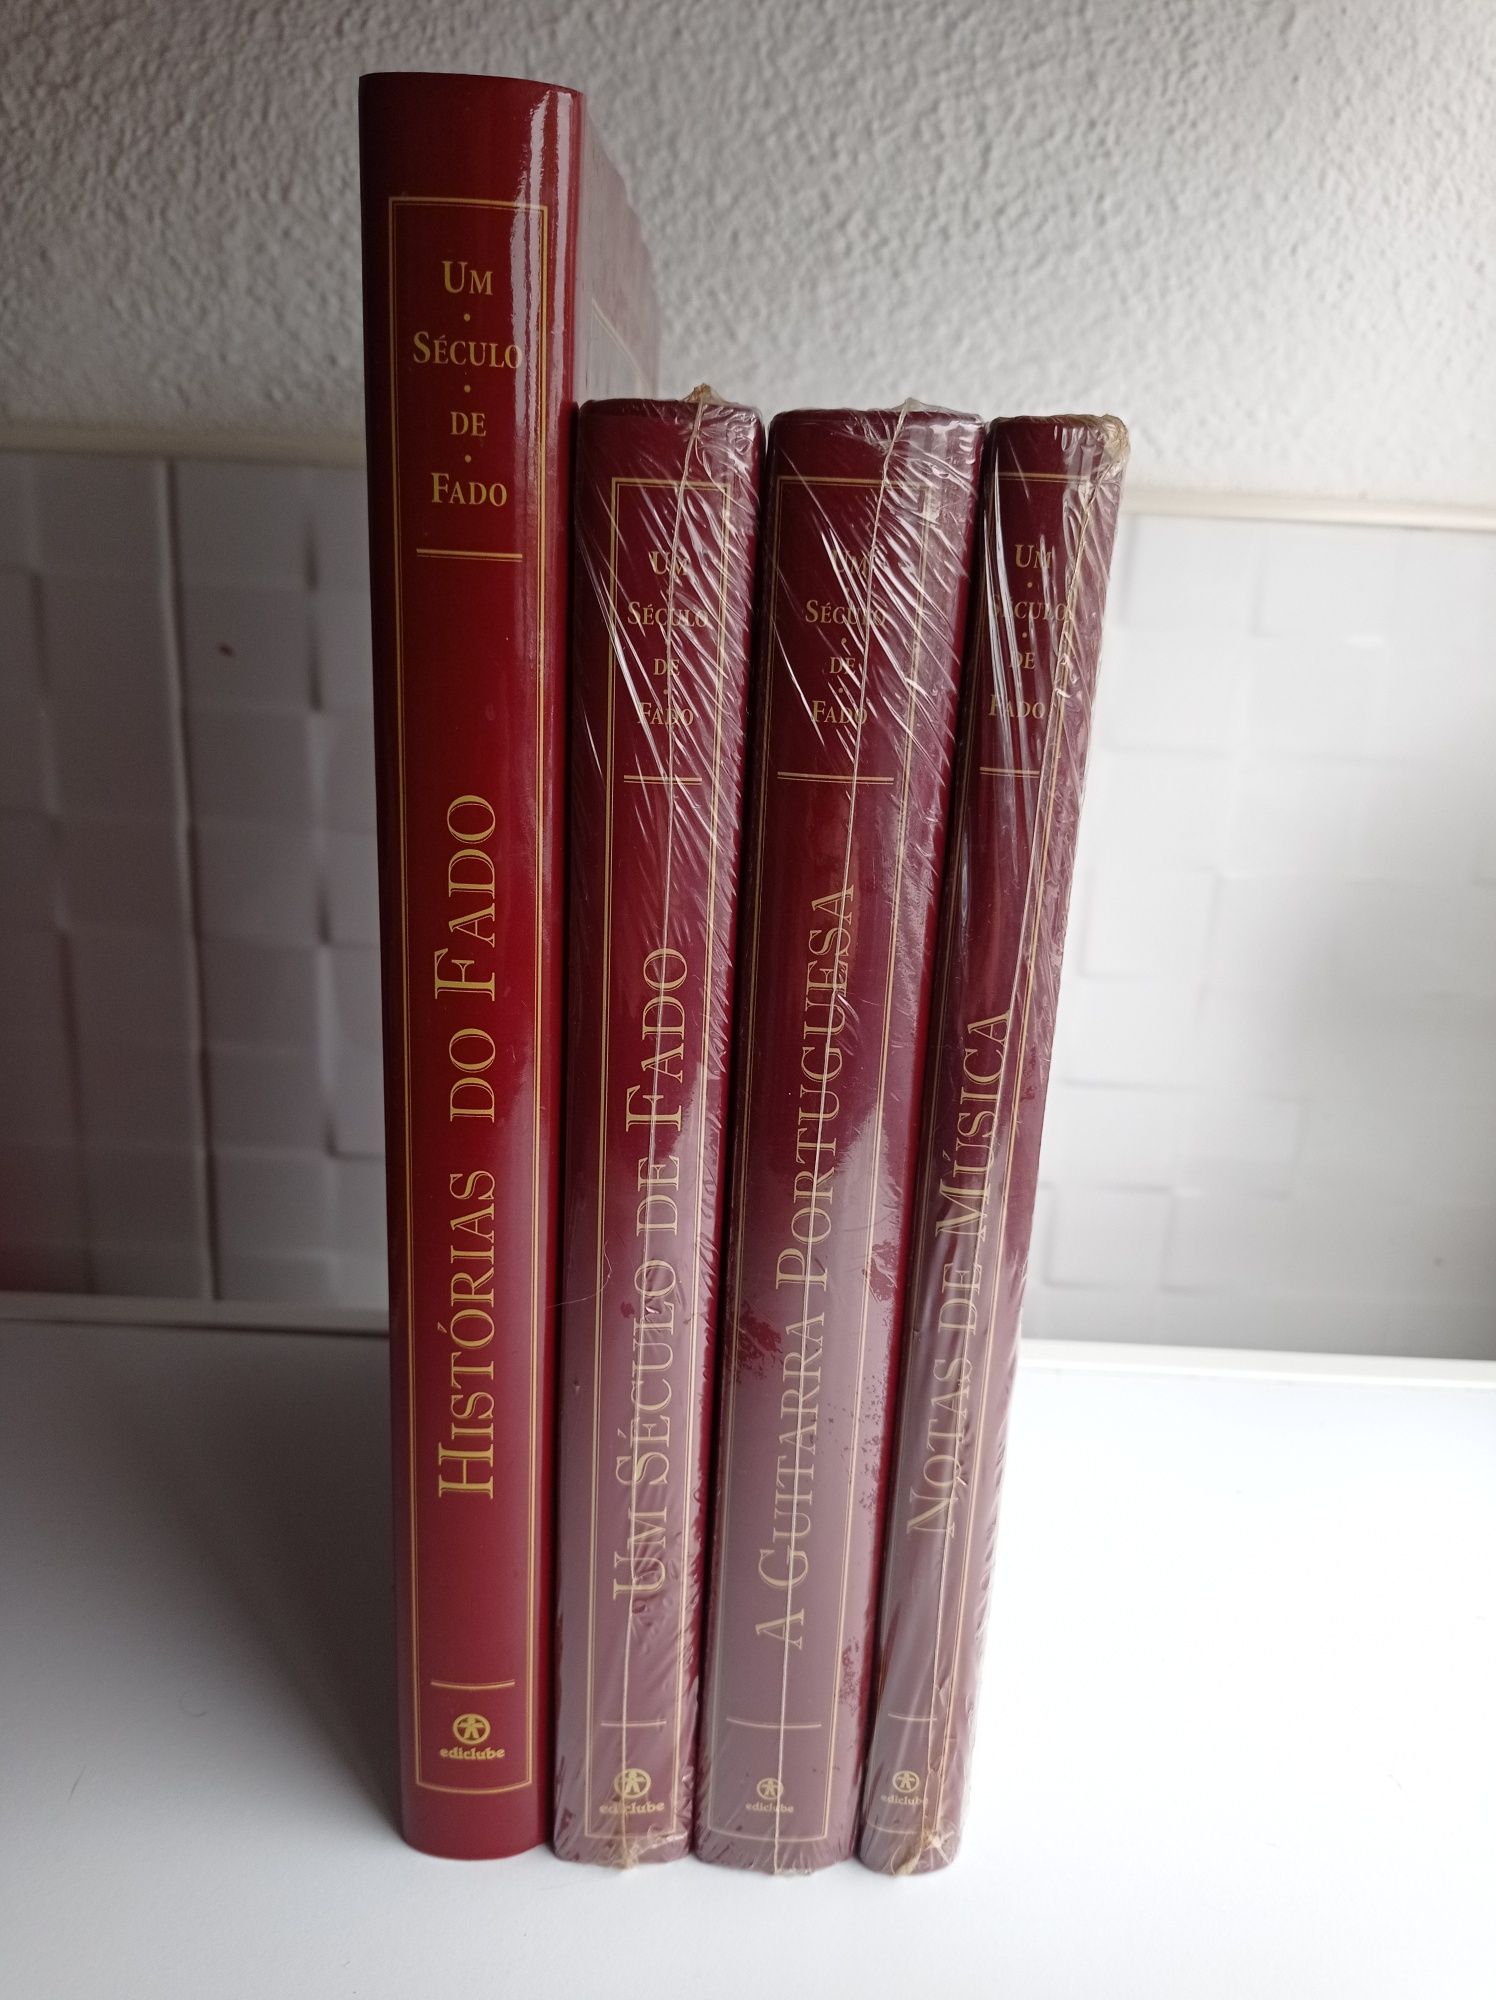 2 livros da Coleção "Um século de fado"